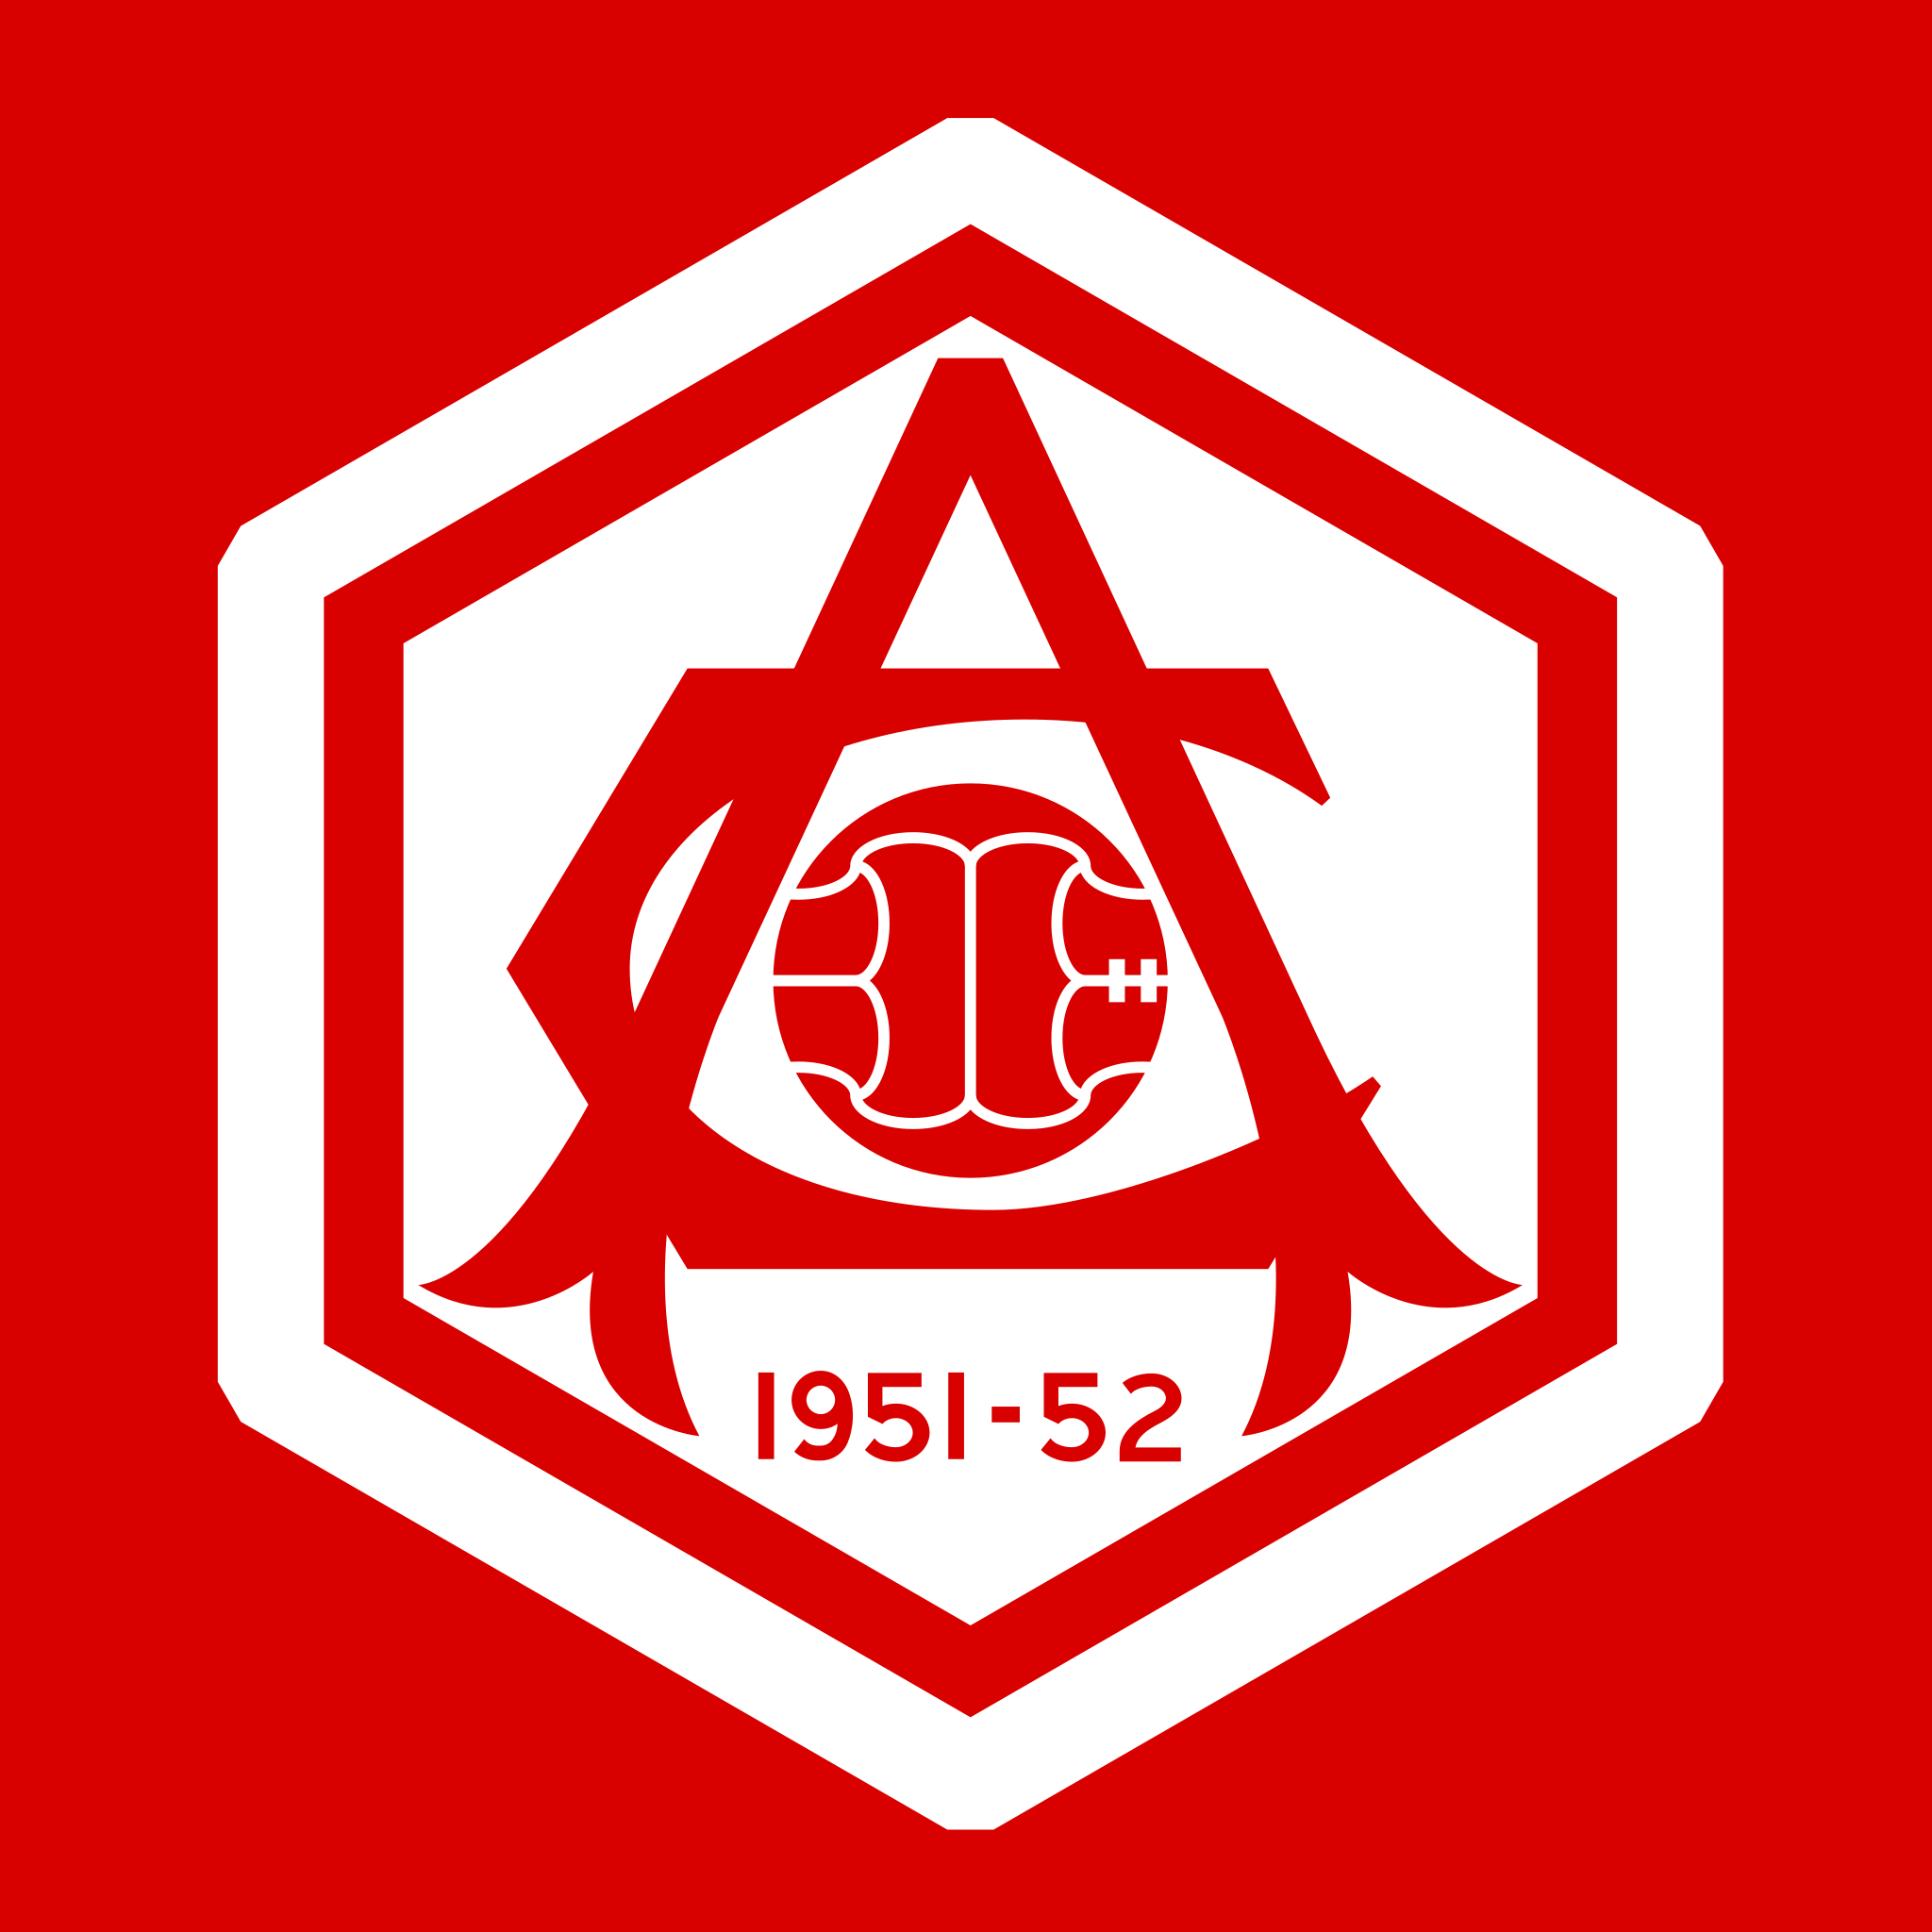 Arsenal Football Club – Wikipédia, a enciclopédia livre